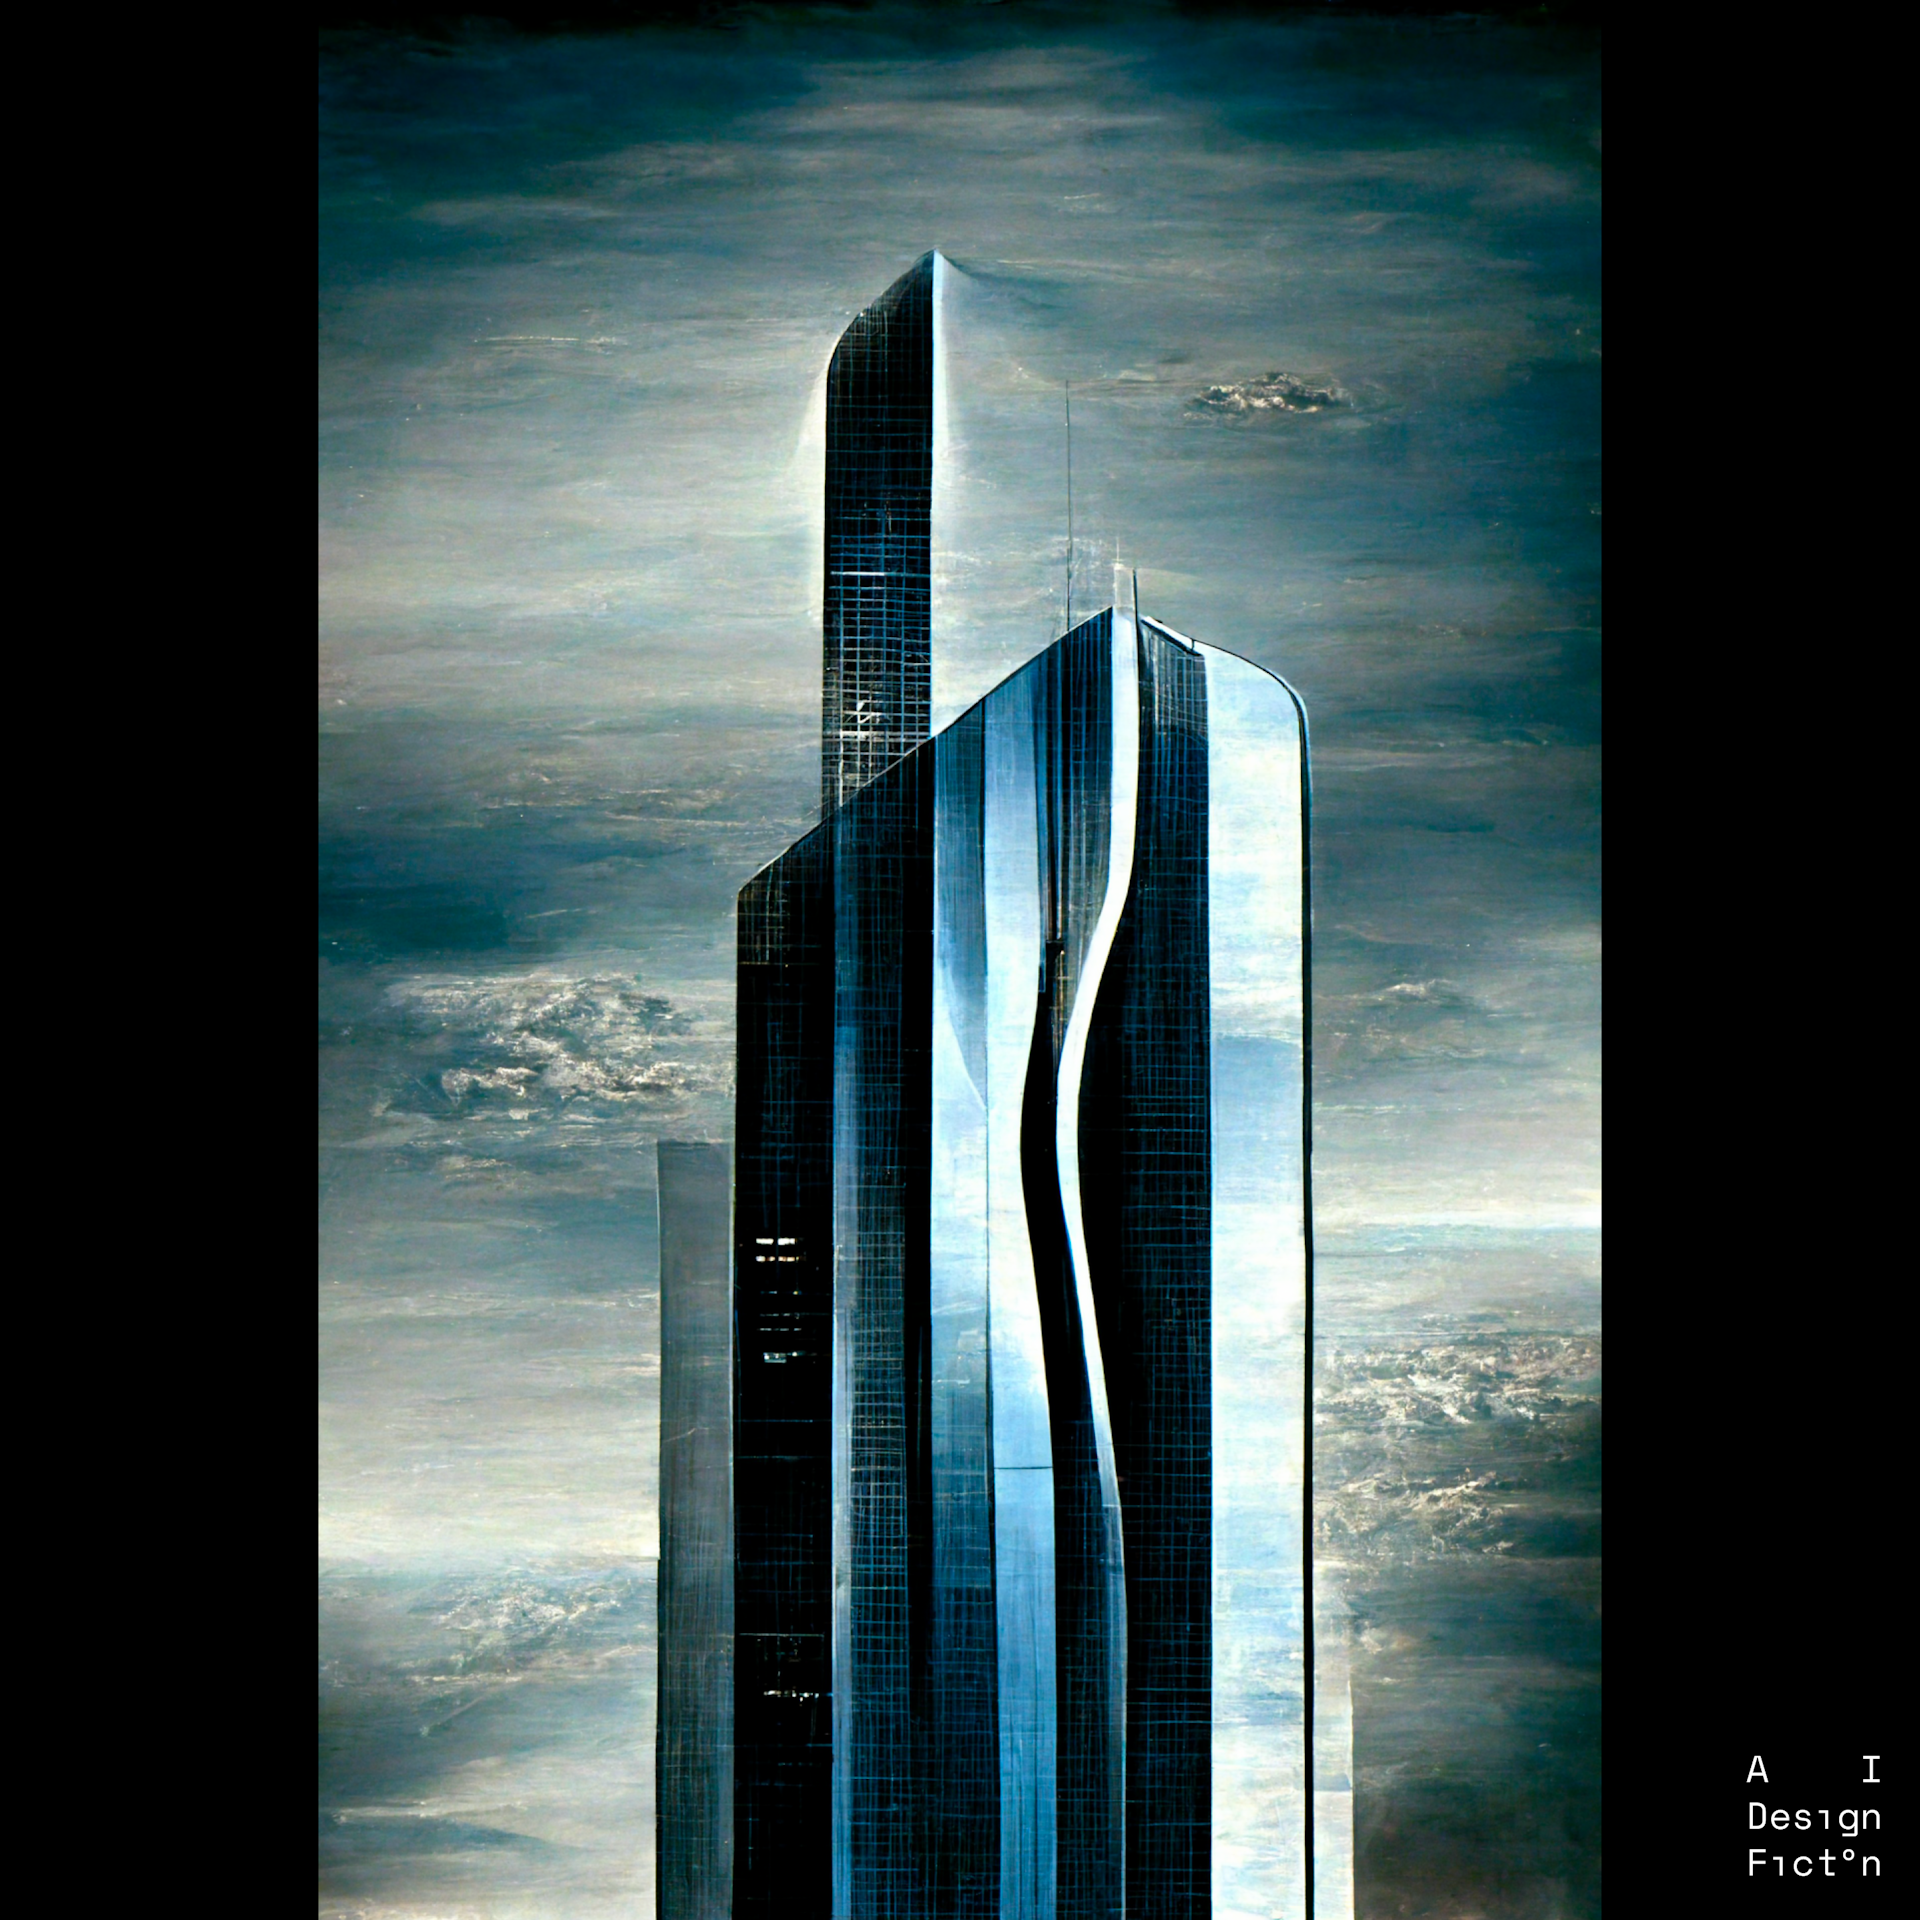 "Skyscraper designed by Giorgio Armani"